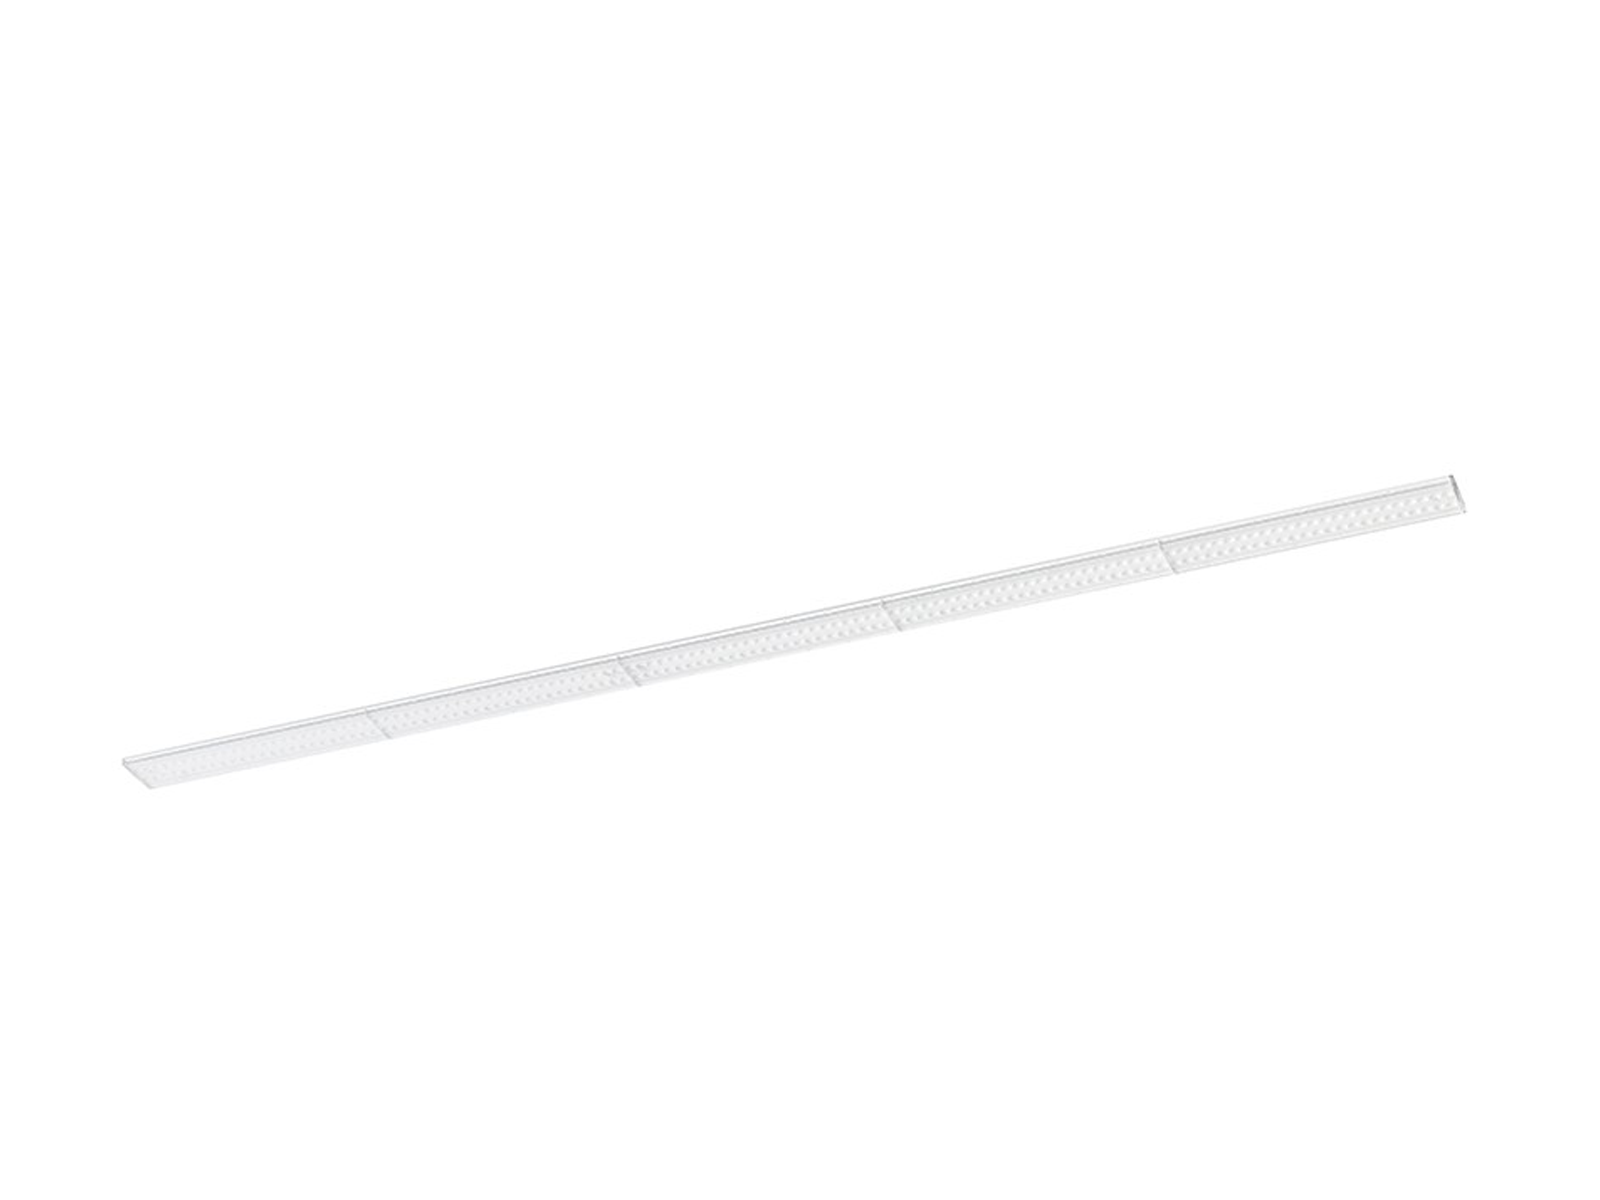 Lineární LED svítidlo FLATLINE 150 pro tříokruhovou lištu, bílá, 230V, 50W, 90°, 3000K, 150cm